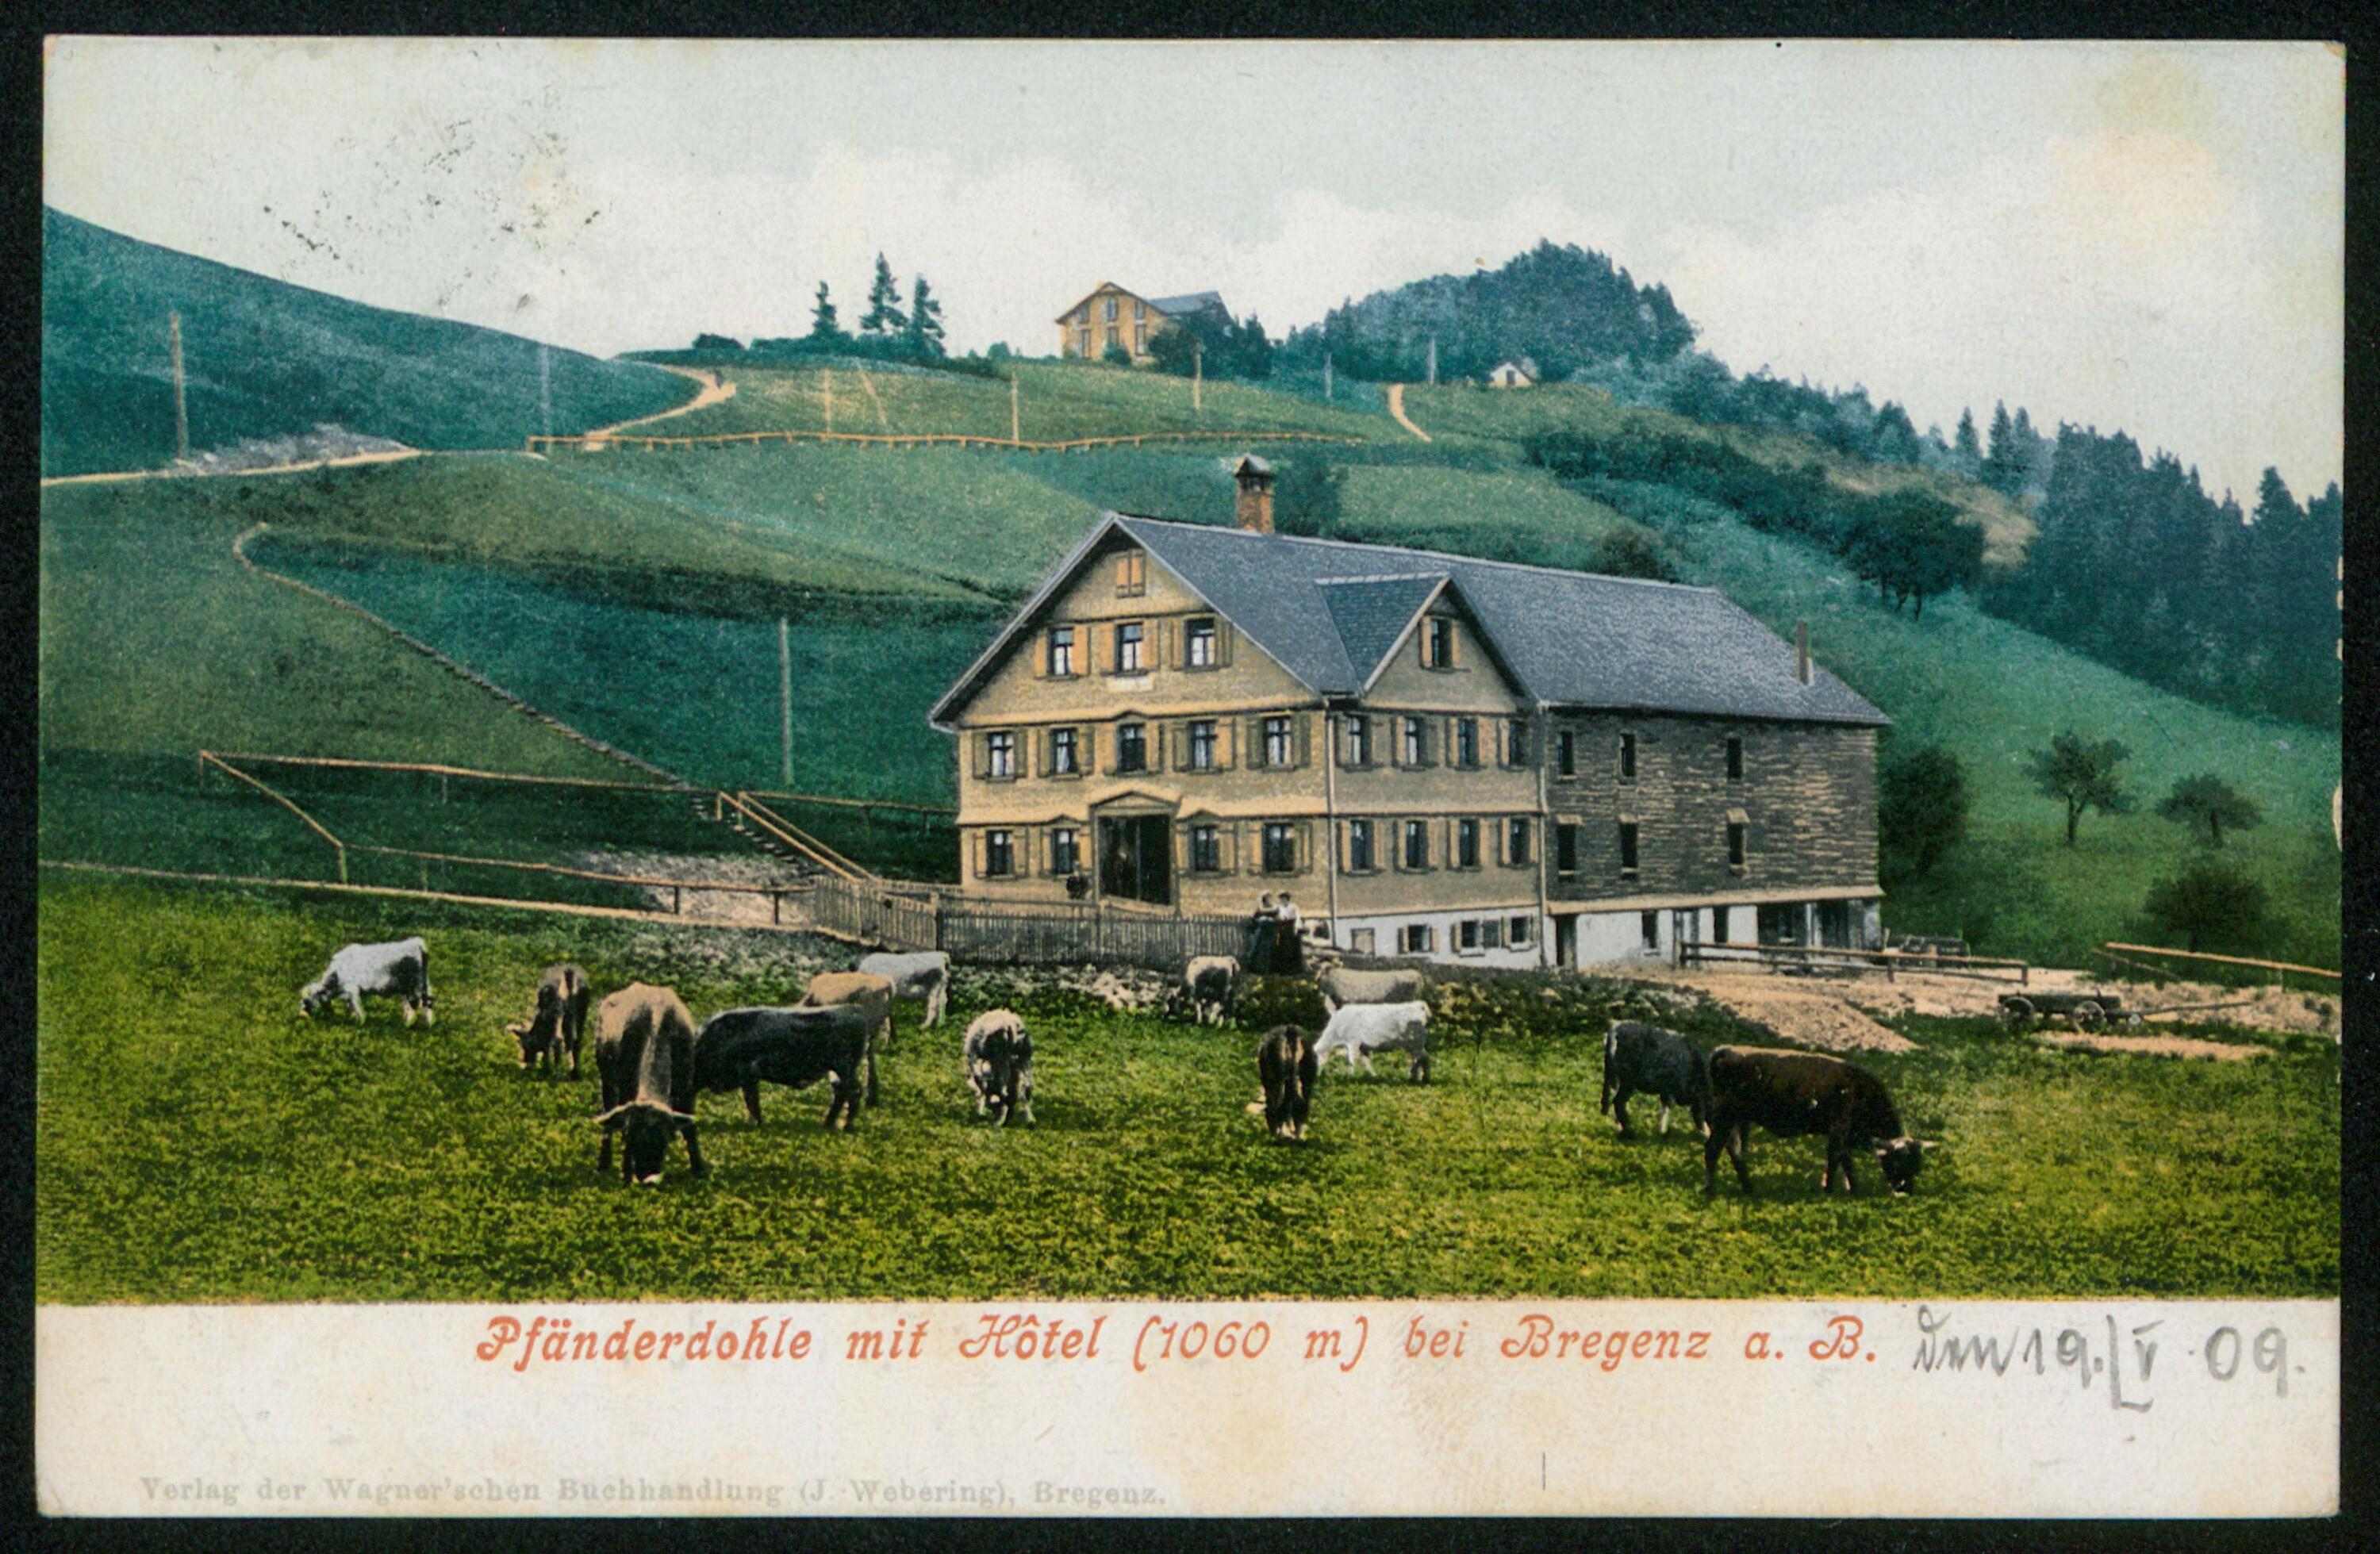 [Lochau] Pfänderdohle mit Hôtel (1060 m) bei Bregenz a. B></div>


    <hr>
    <div class=